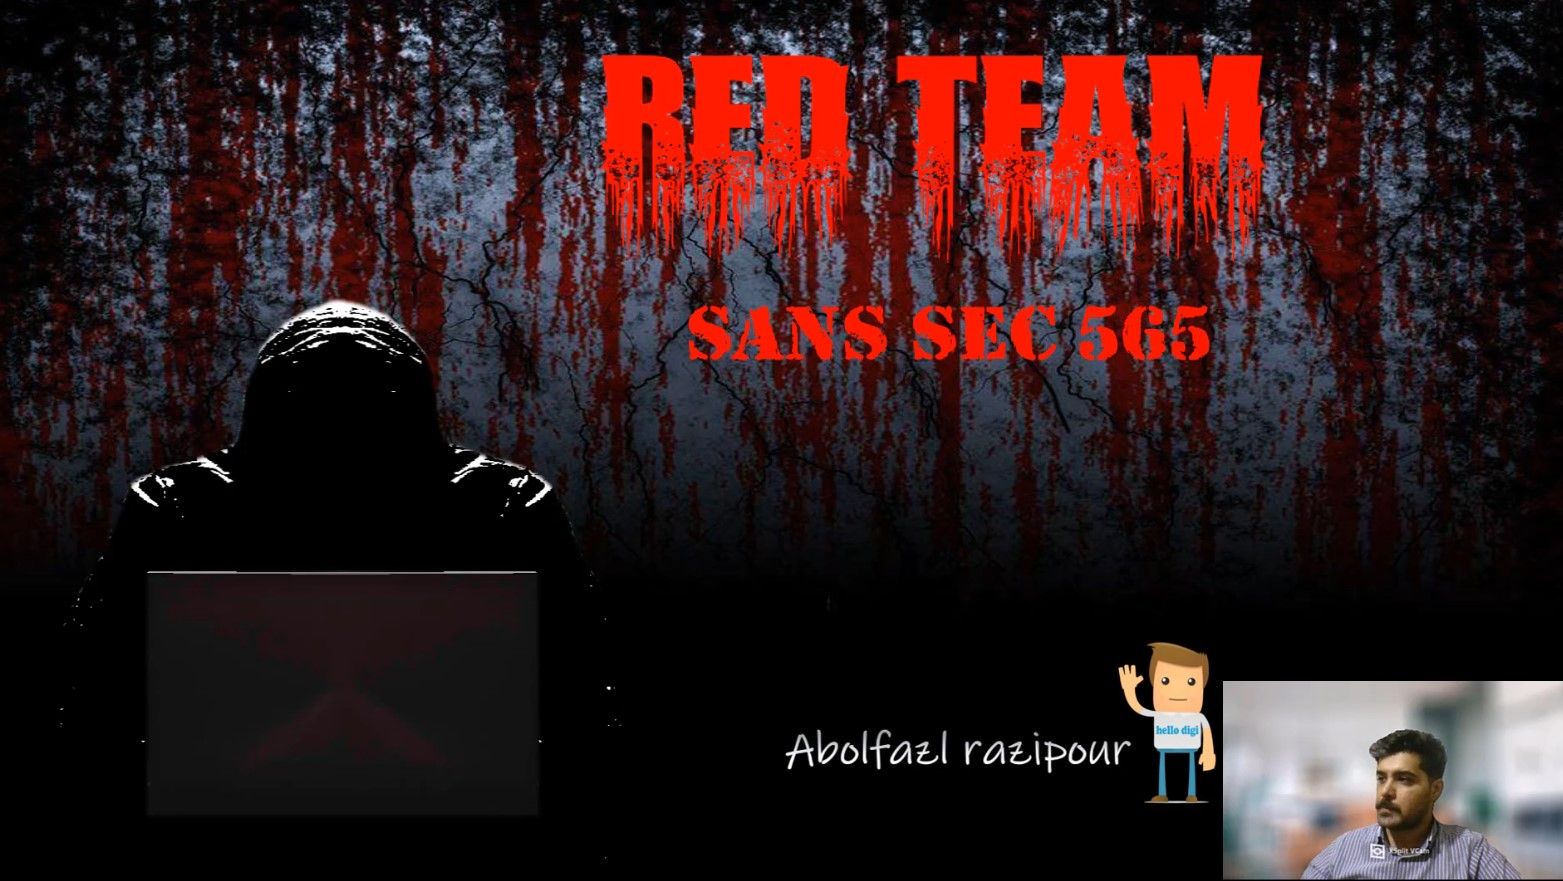 اموزش دوره Sans sec 565 (red team|تیم قرمز) قسمت اول